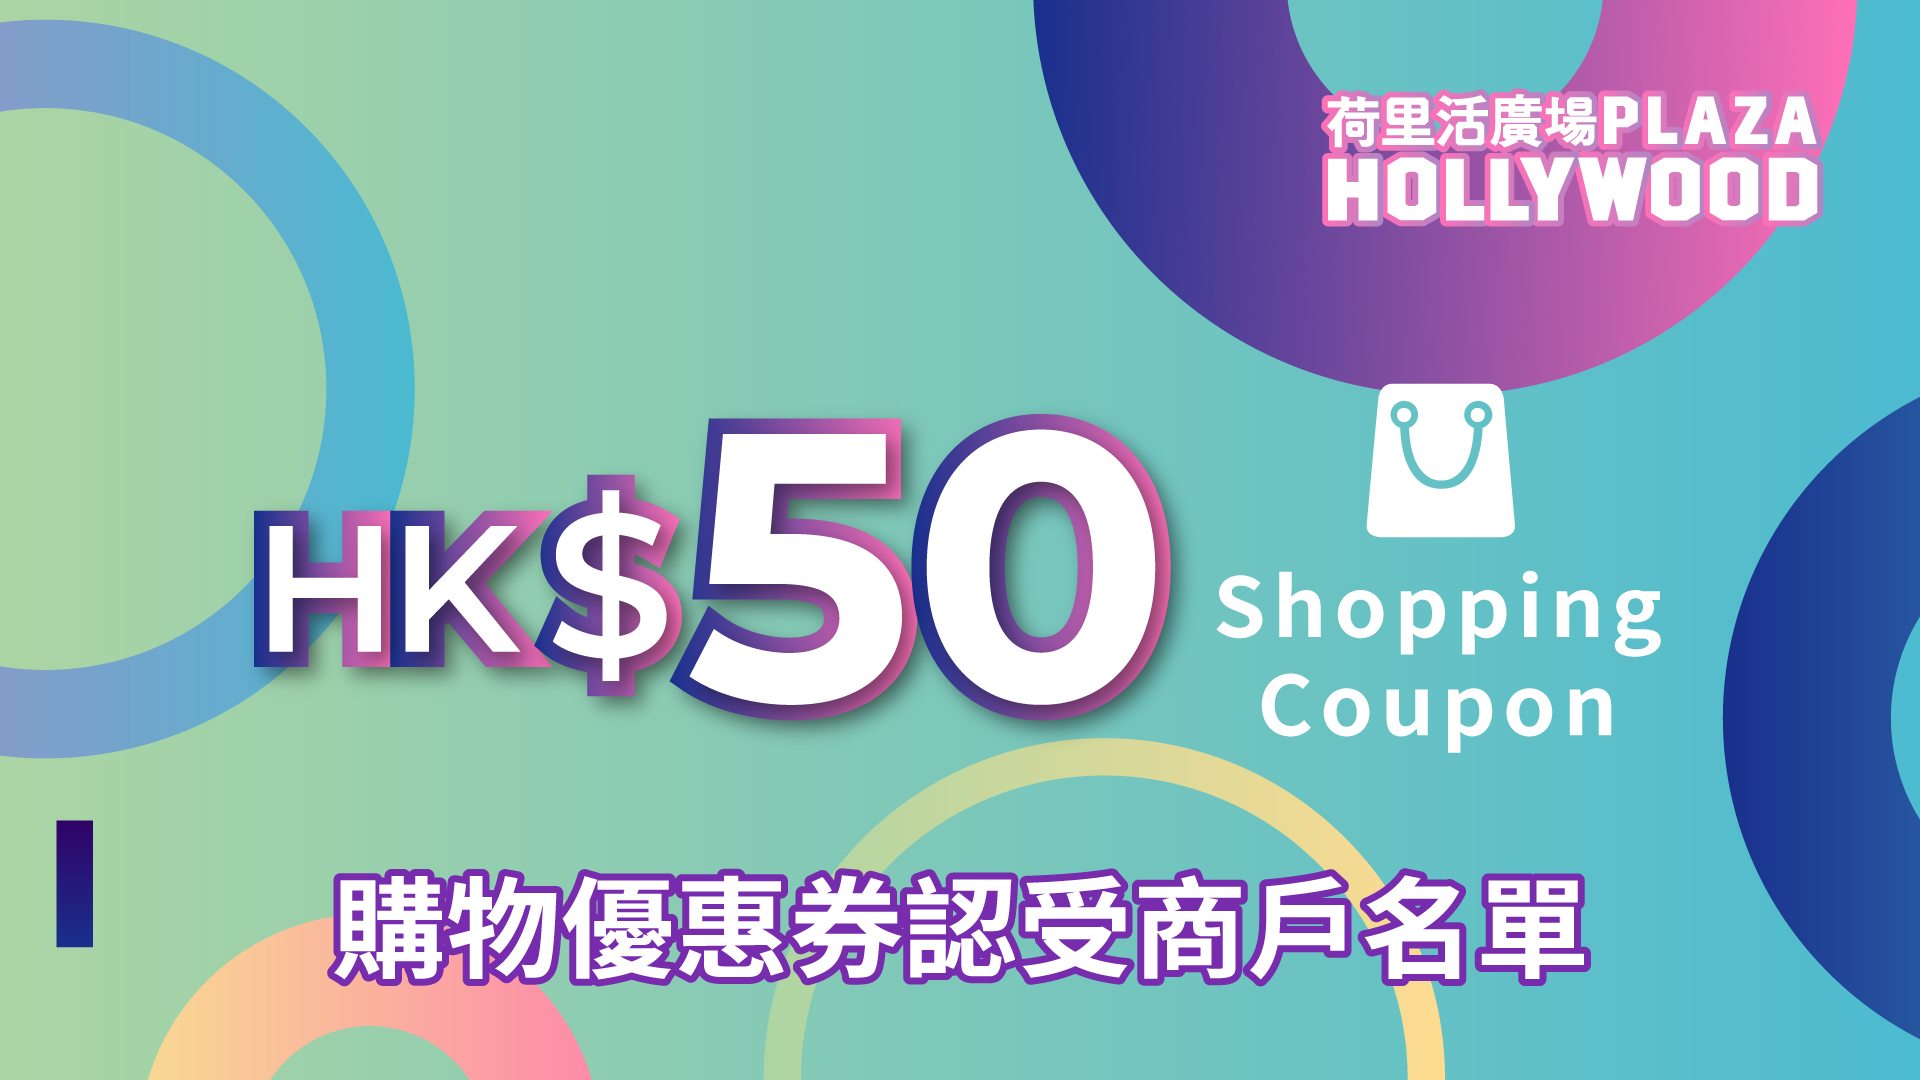 荷里活廣場HK$50指定商戶購物優惠券 - 參與之指定商戶